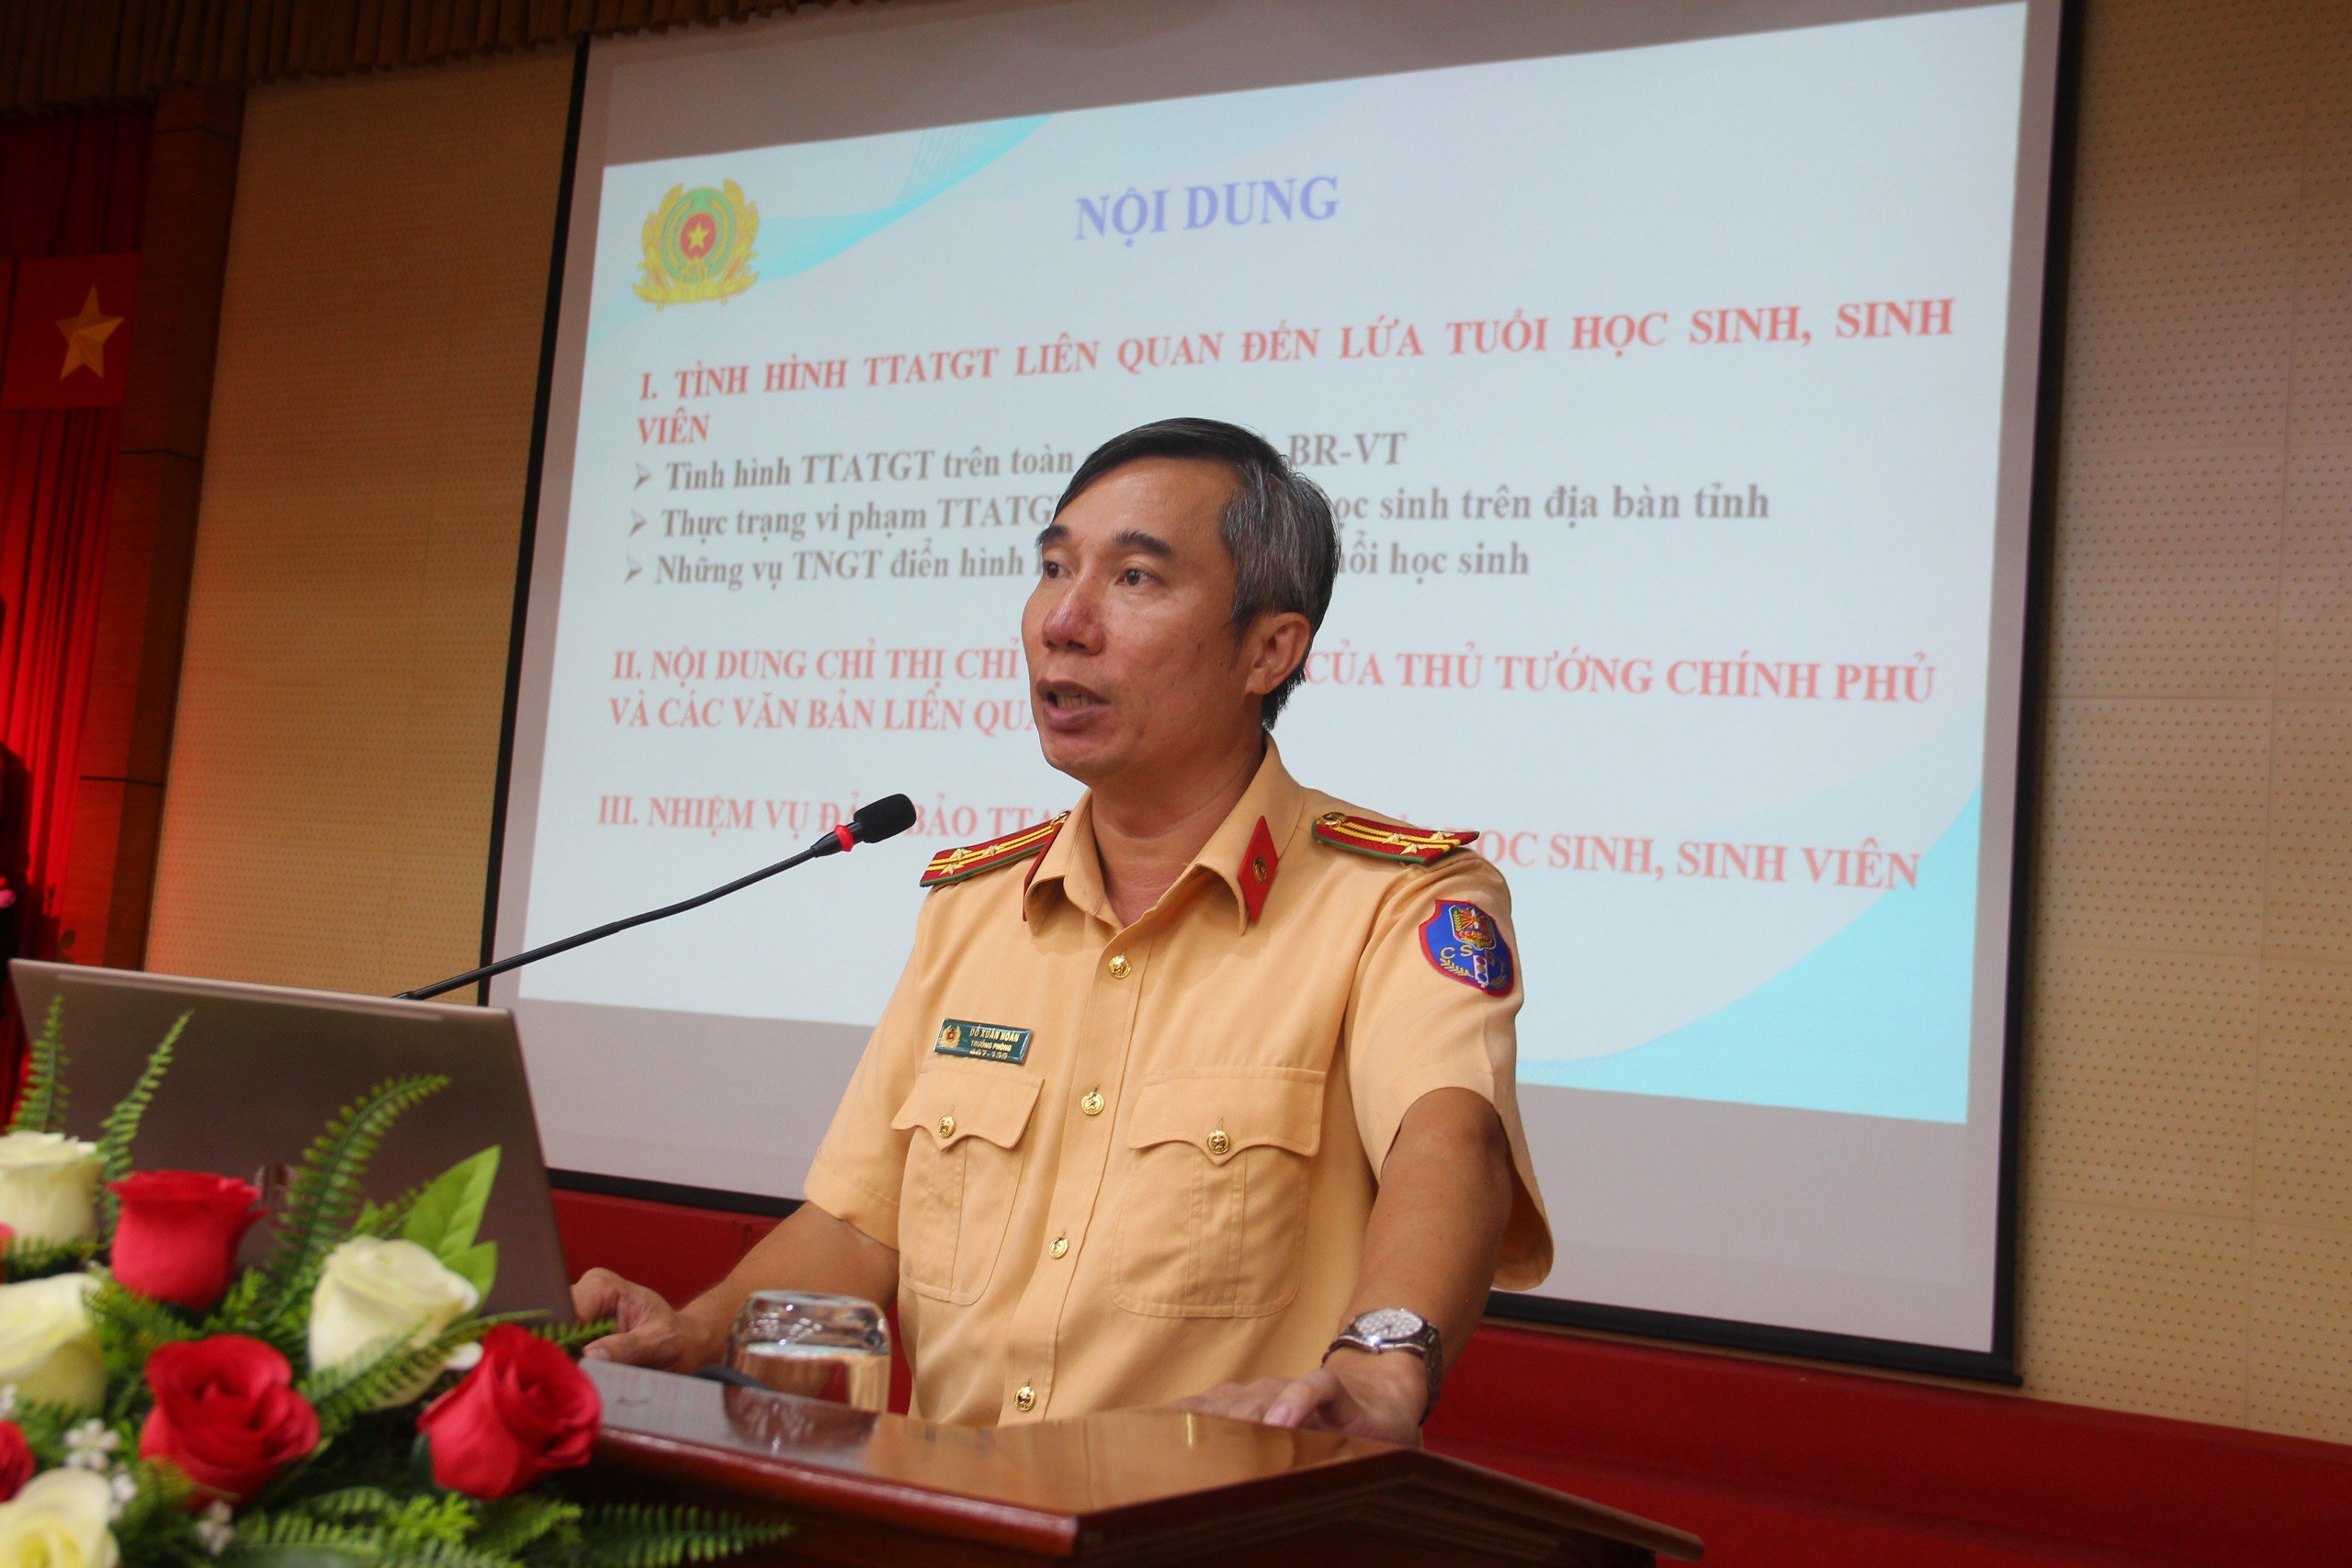 Thượng tá Đỗ Xuân Hoàn, Trưởng Phòng CSGT, Công an tỉnh báo cáo về tình hình TTATGT liên quan đến học sinh.